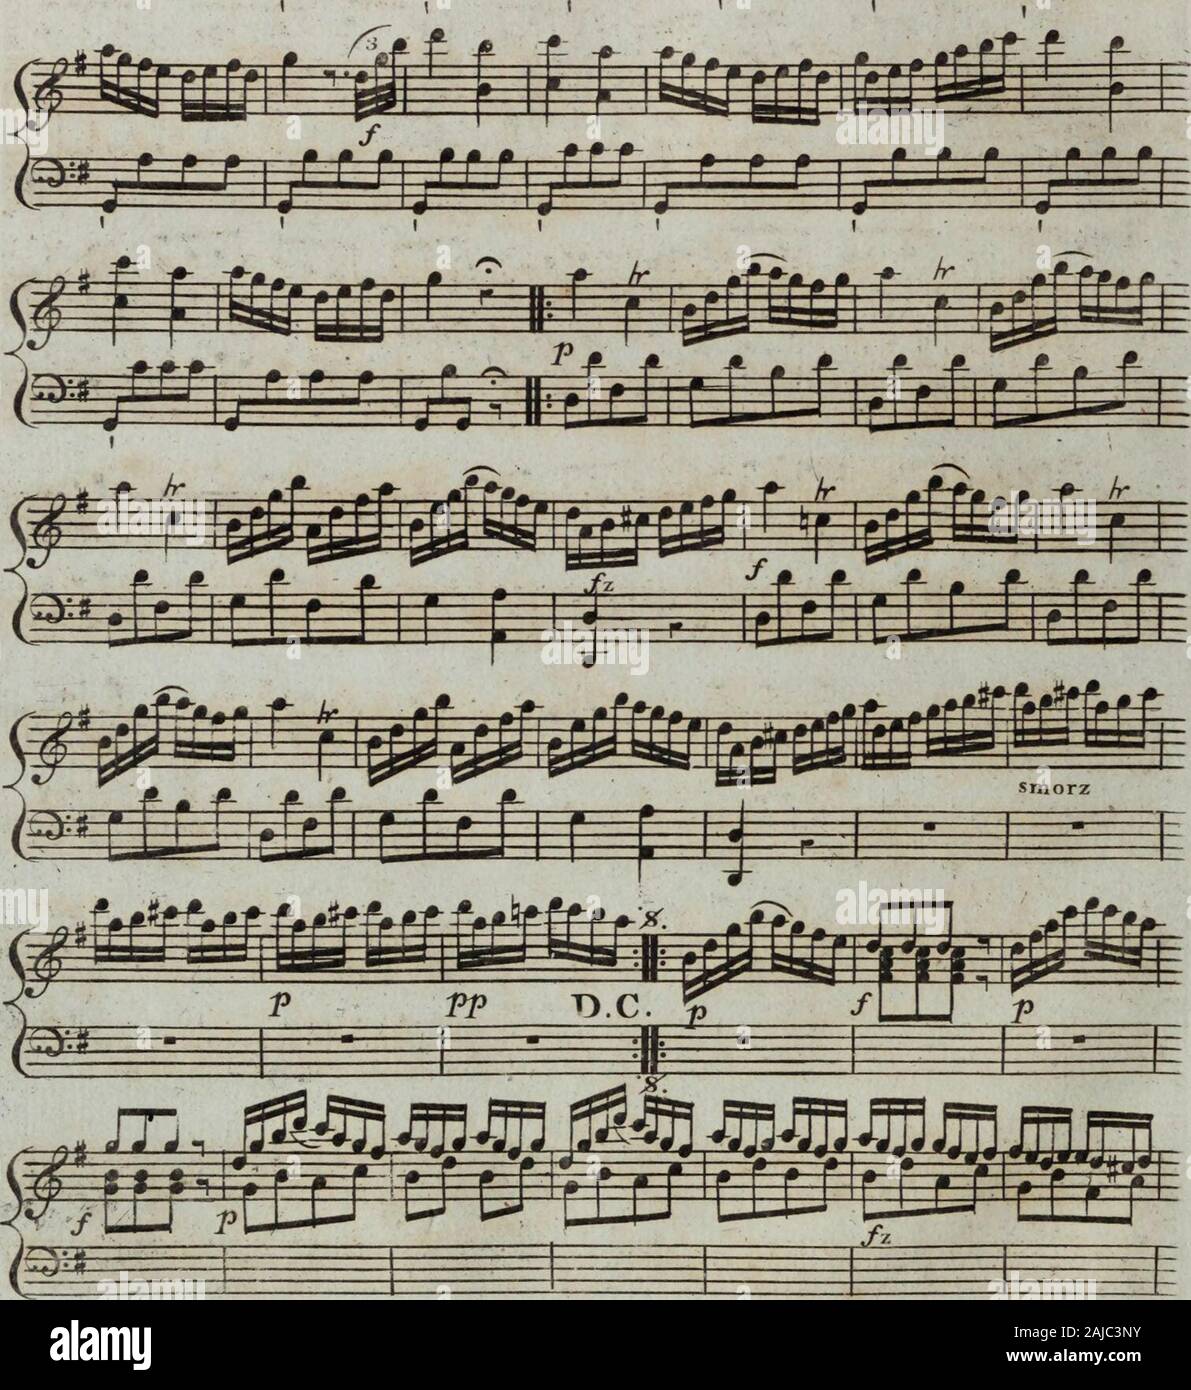 Sei sonates pour la harpe avec accompagnement d'onu violon ou flûte obligée, tres faciles un éxécuter, elles peuvent aussi se jouer seules d'autant qu'elles contiennent beaucoup de petits airs . tmm^mm^J&mB^^ w f a * 9 Foto Stock